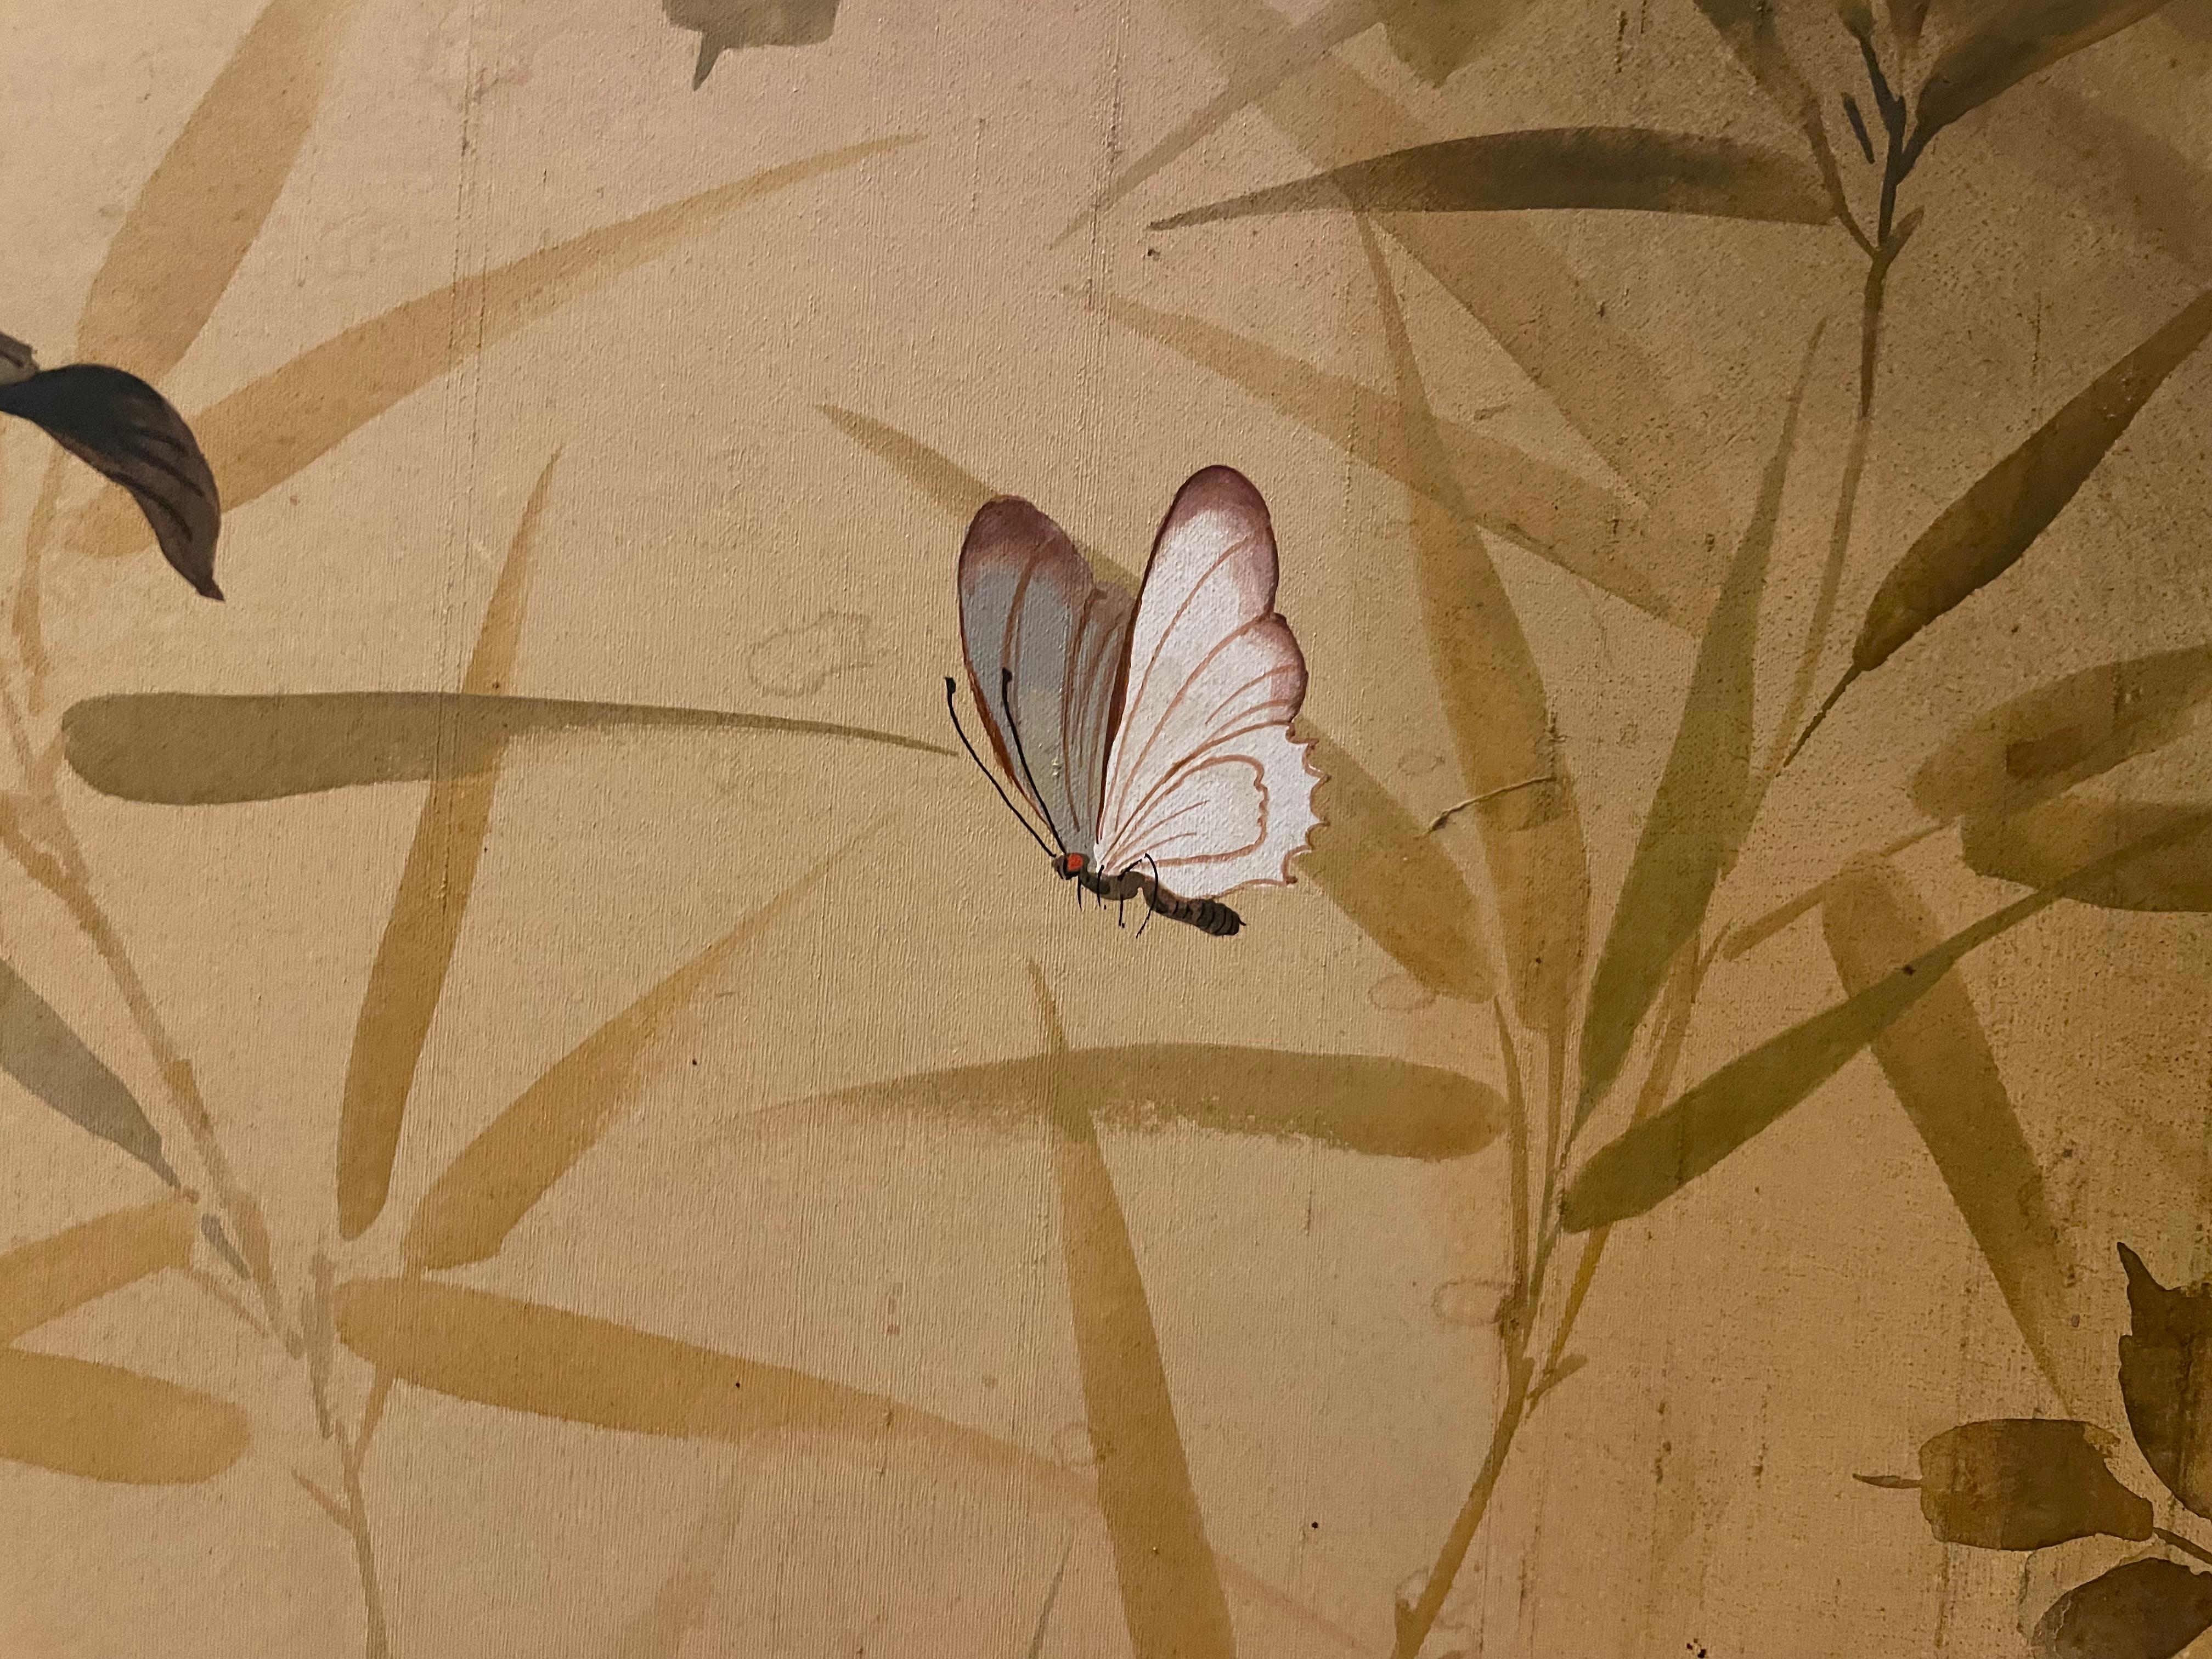 Kee Wu Wah était un artiste chinois connu pour ses peintures florales sur toile et sur soie. Signé dans le coin supérieur.

Peinture à l'huile originale de style classique chinois traditionnel avec des accents romantiques sur soie. Protégé et proche